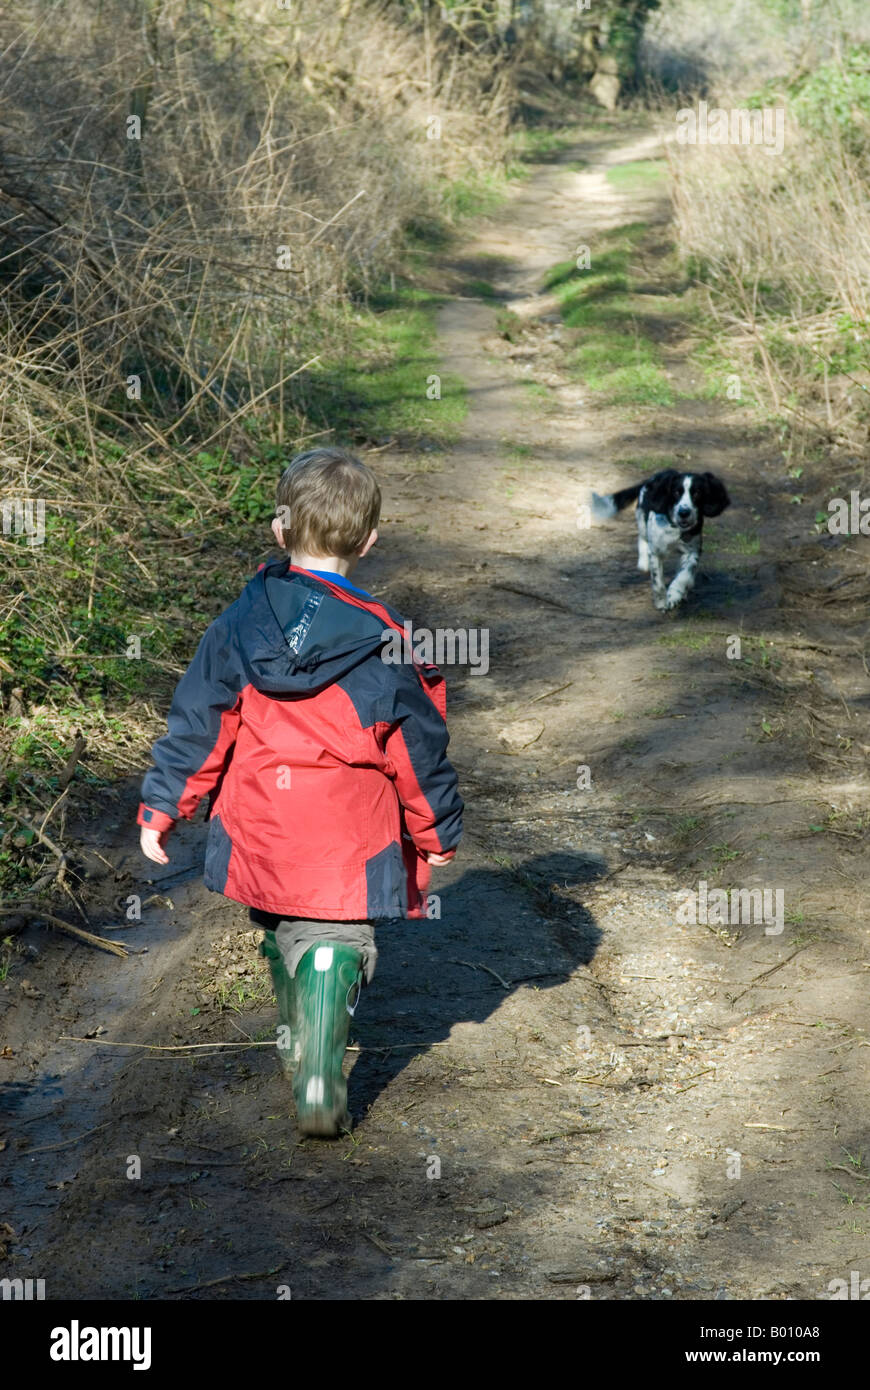 Jeune garçon sur pied avec son chien au Royaume-Uni Banque D'Images